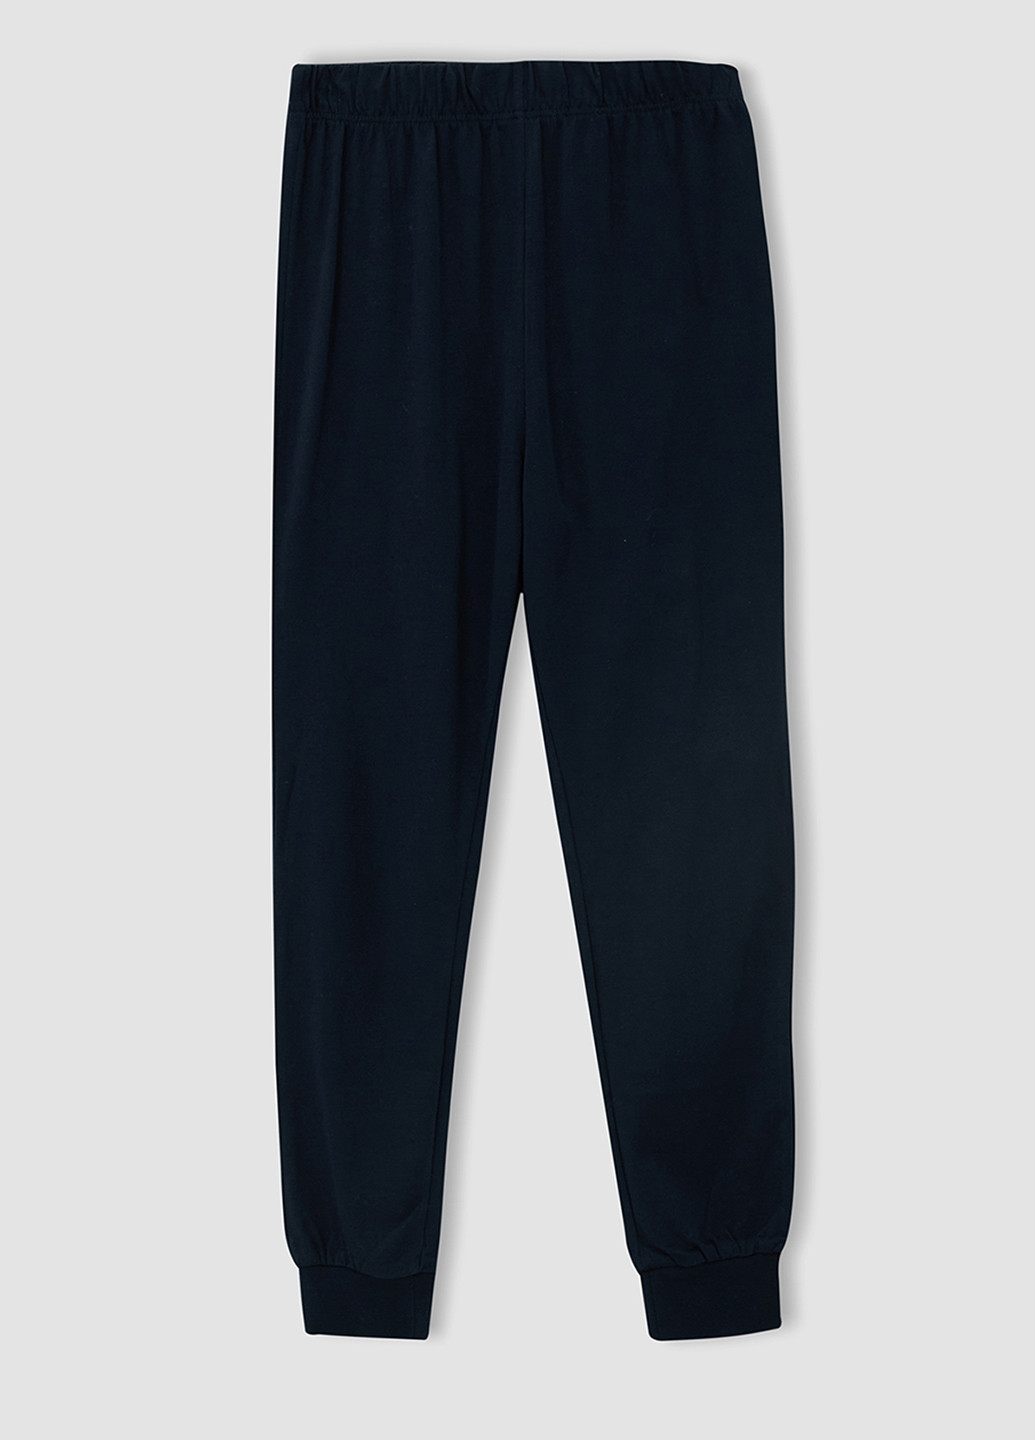 Комбинированная всесезон (лонгслив, брюки) лонгслив + брюки DeFacto Пижама